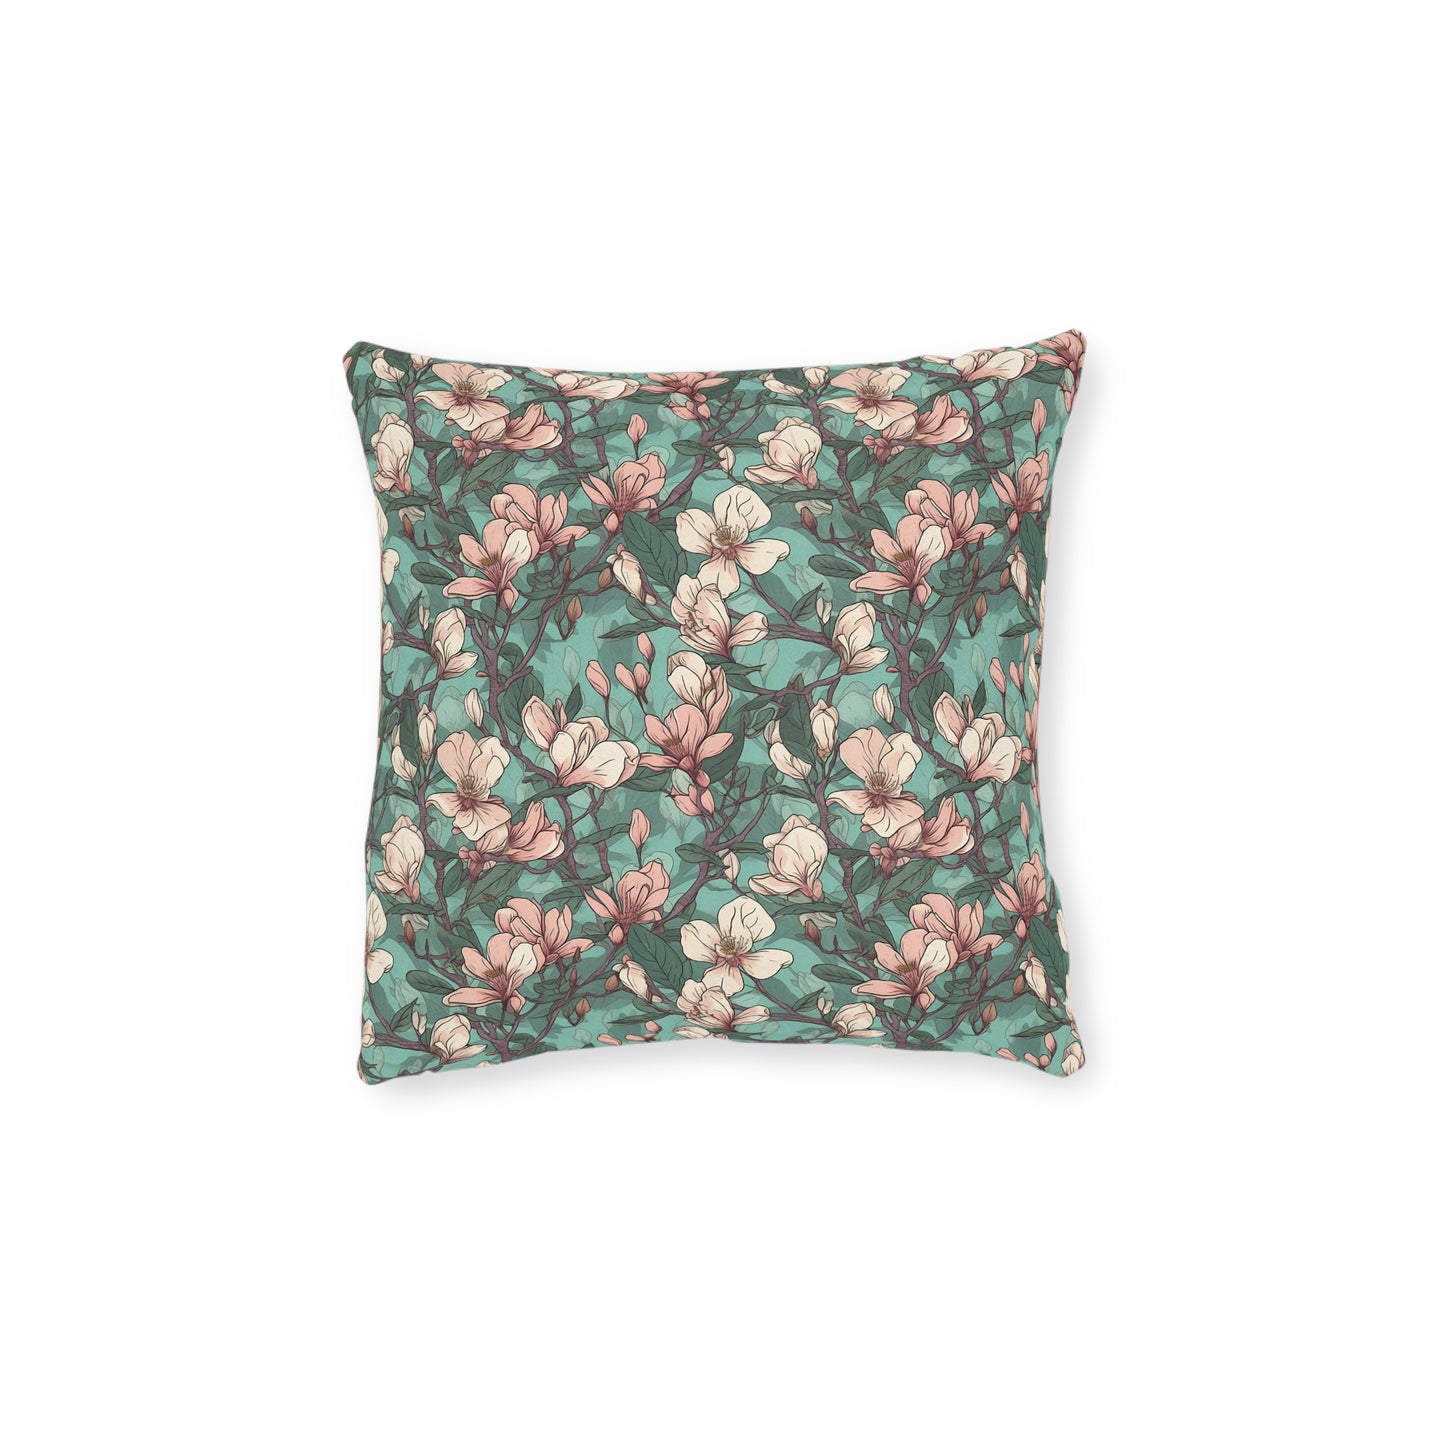 Magnolia Serenade - Spring Blush Palette Sofa and Chair Cushion